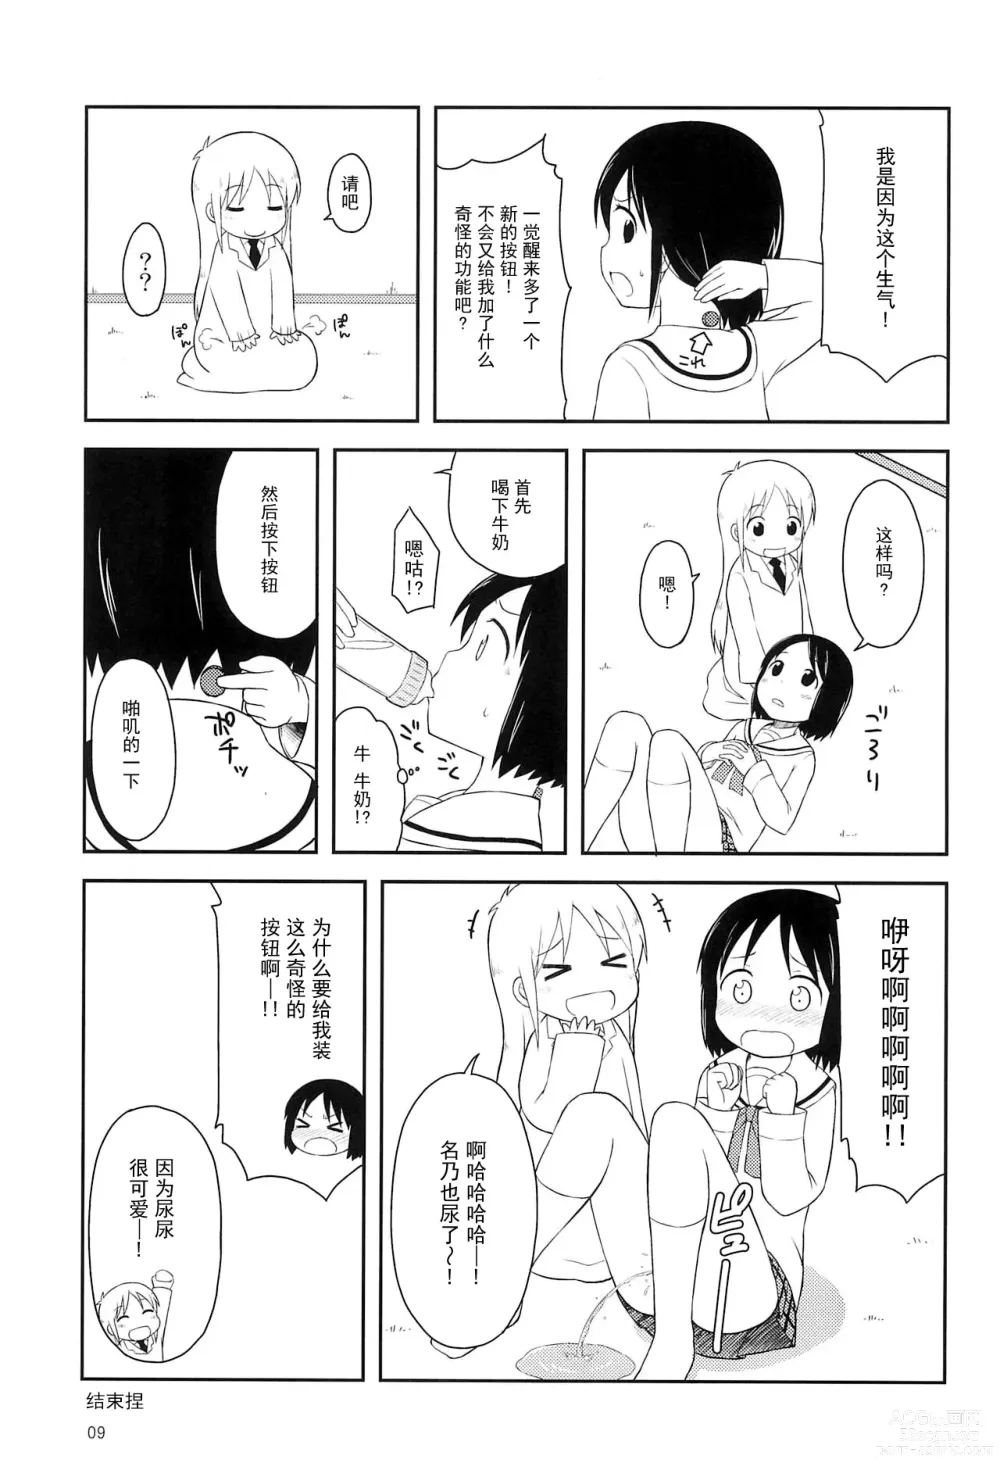 Page 9 of doujinshi Youta Tanpenshuu Yoru no Uta